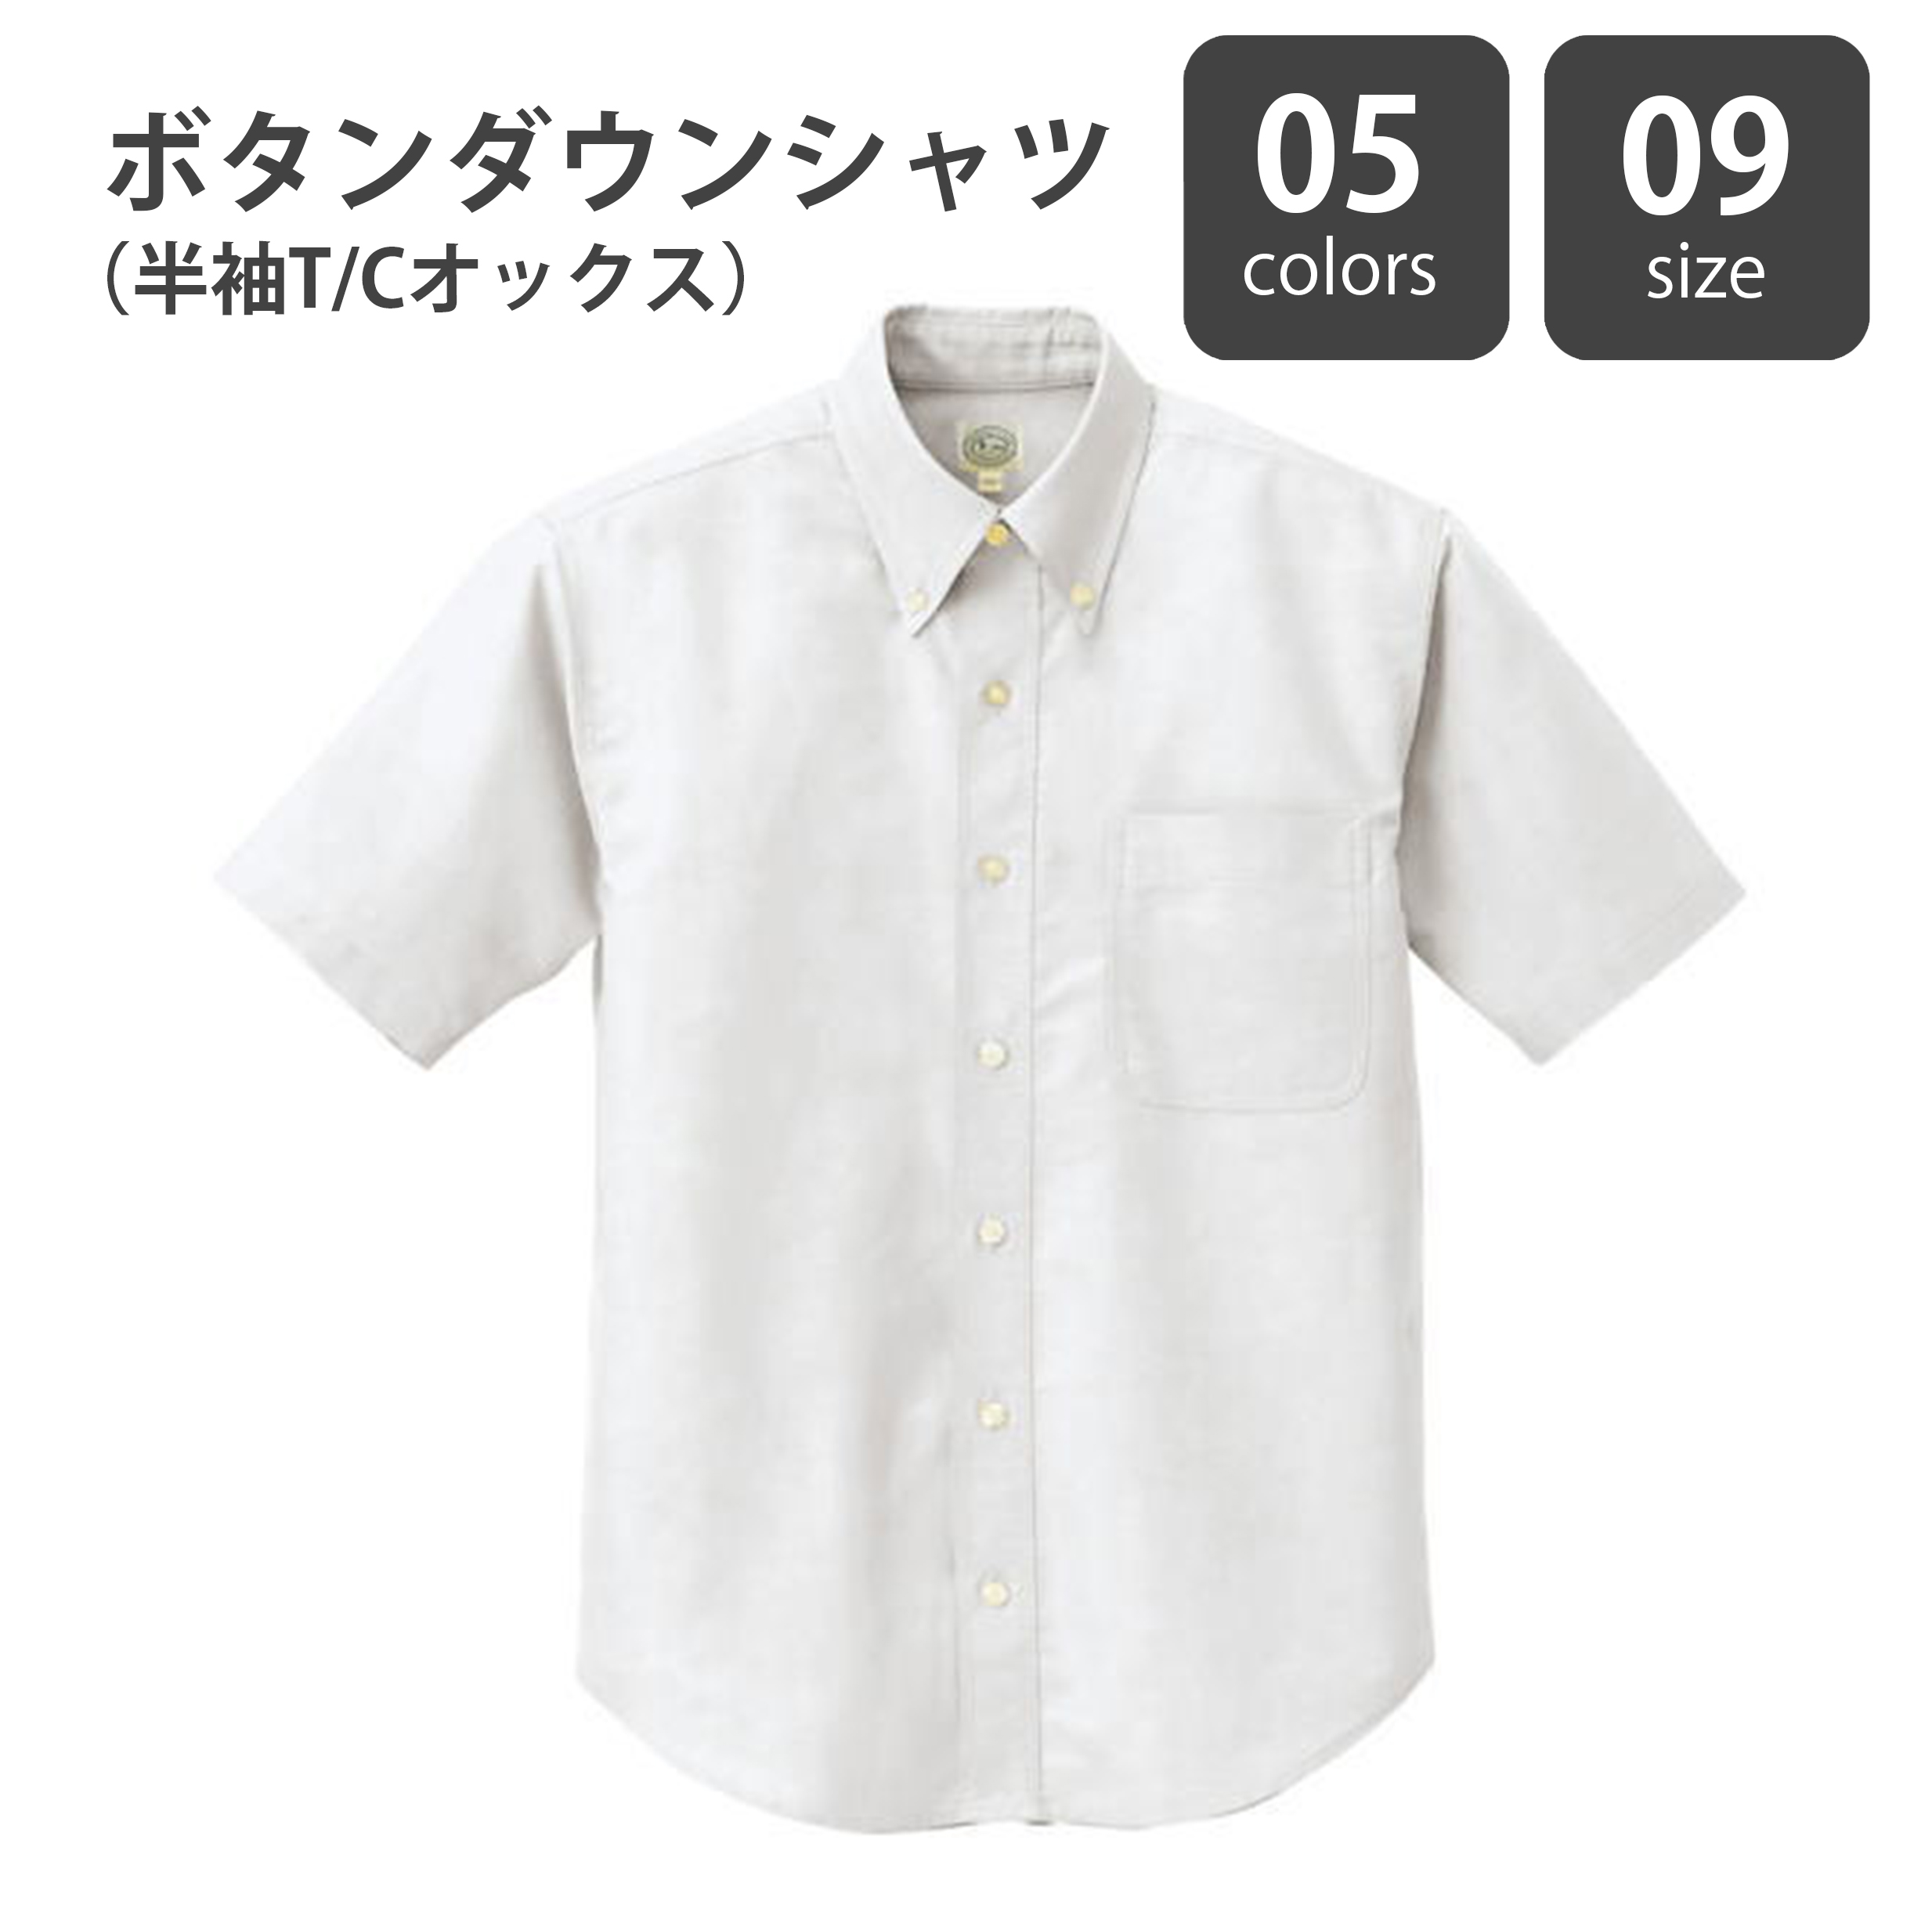 ボタンダウンシャツ(半袖T/Cオックス)